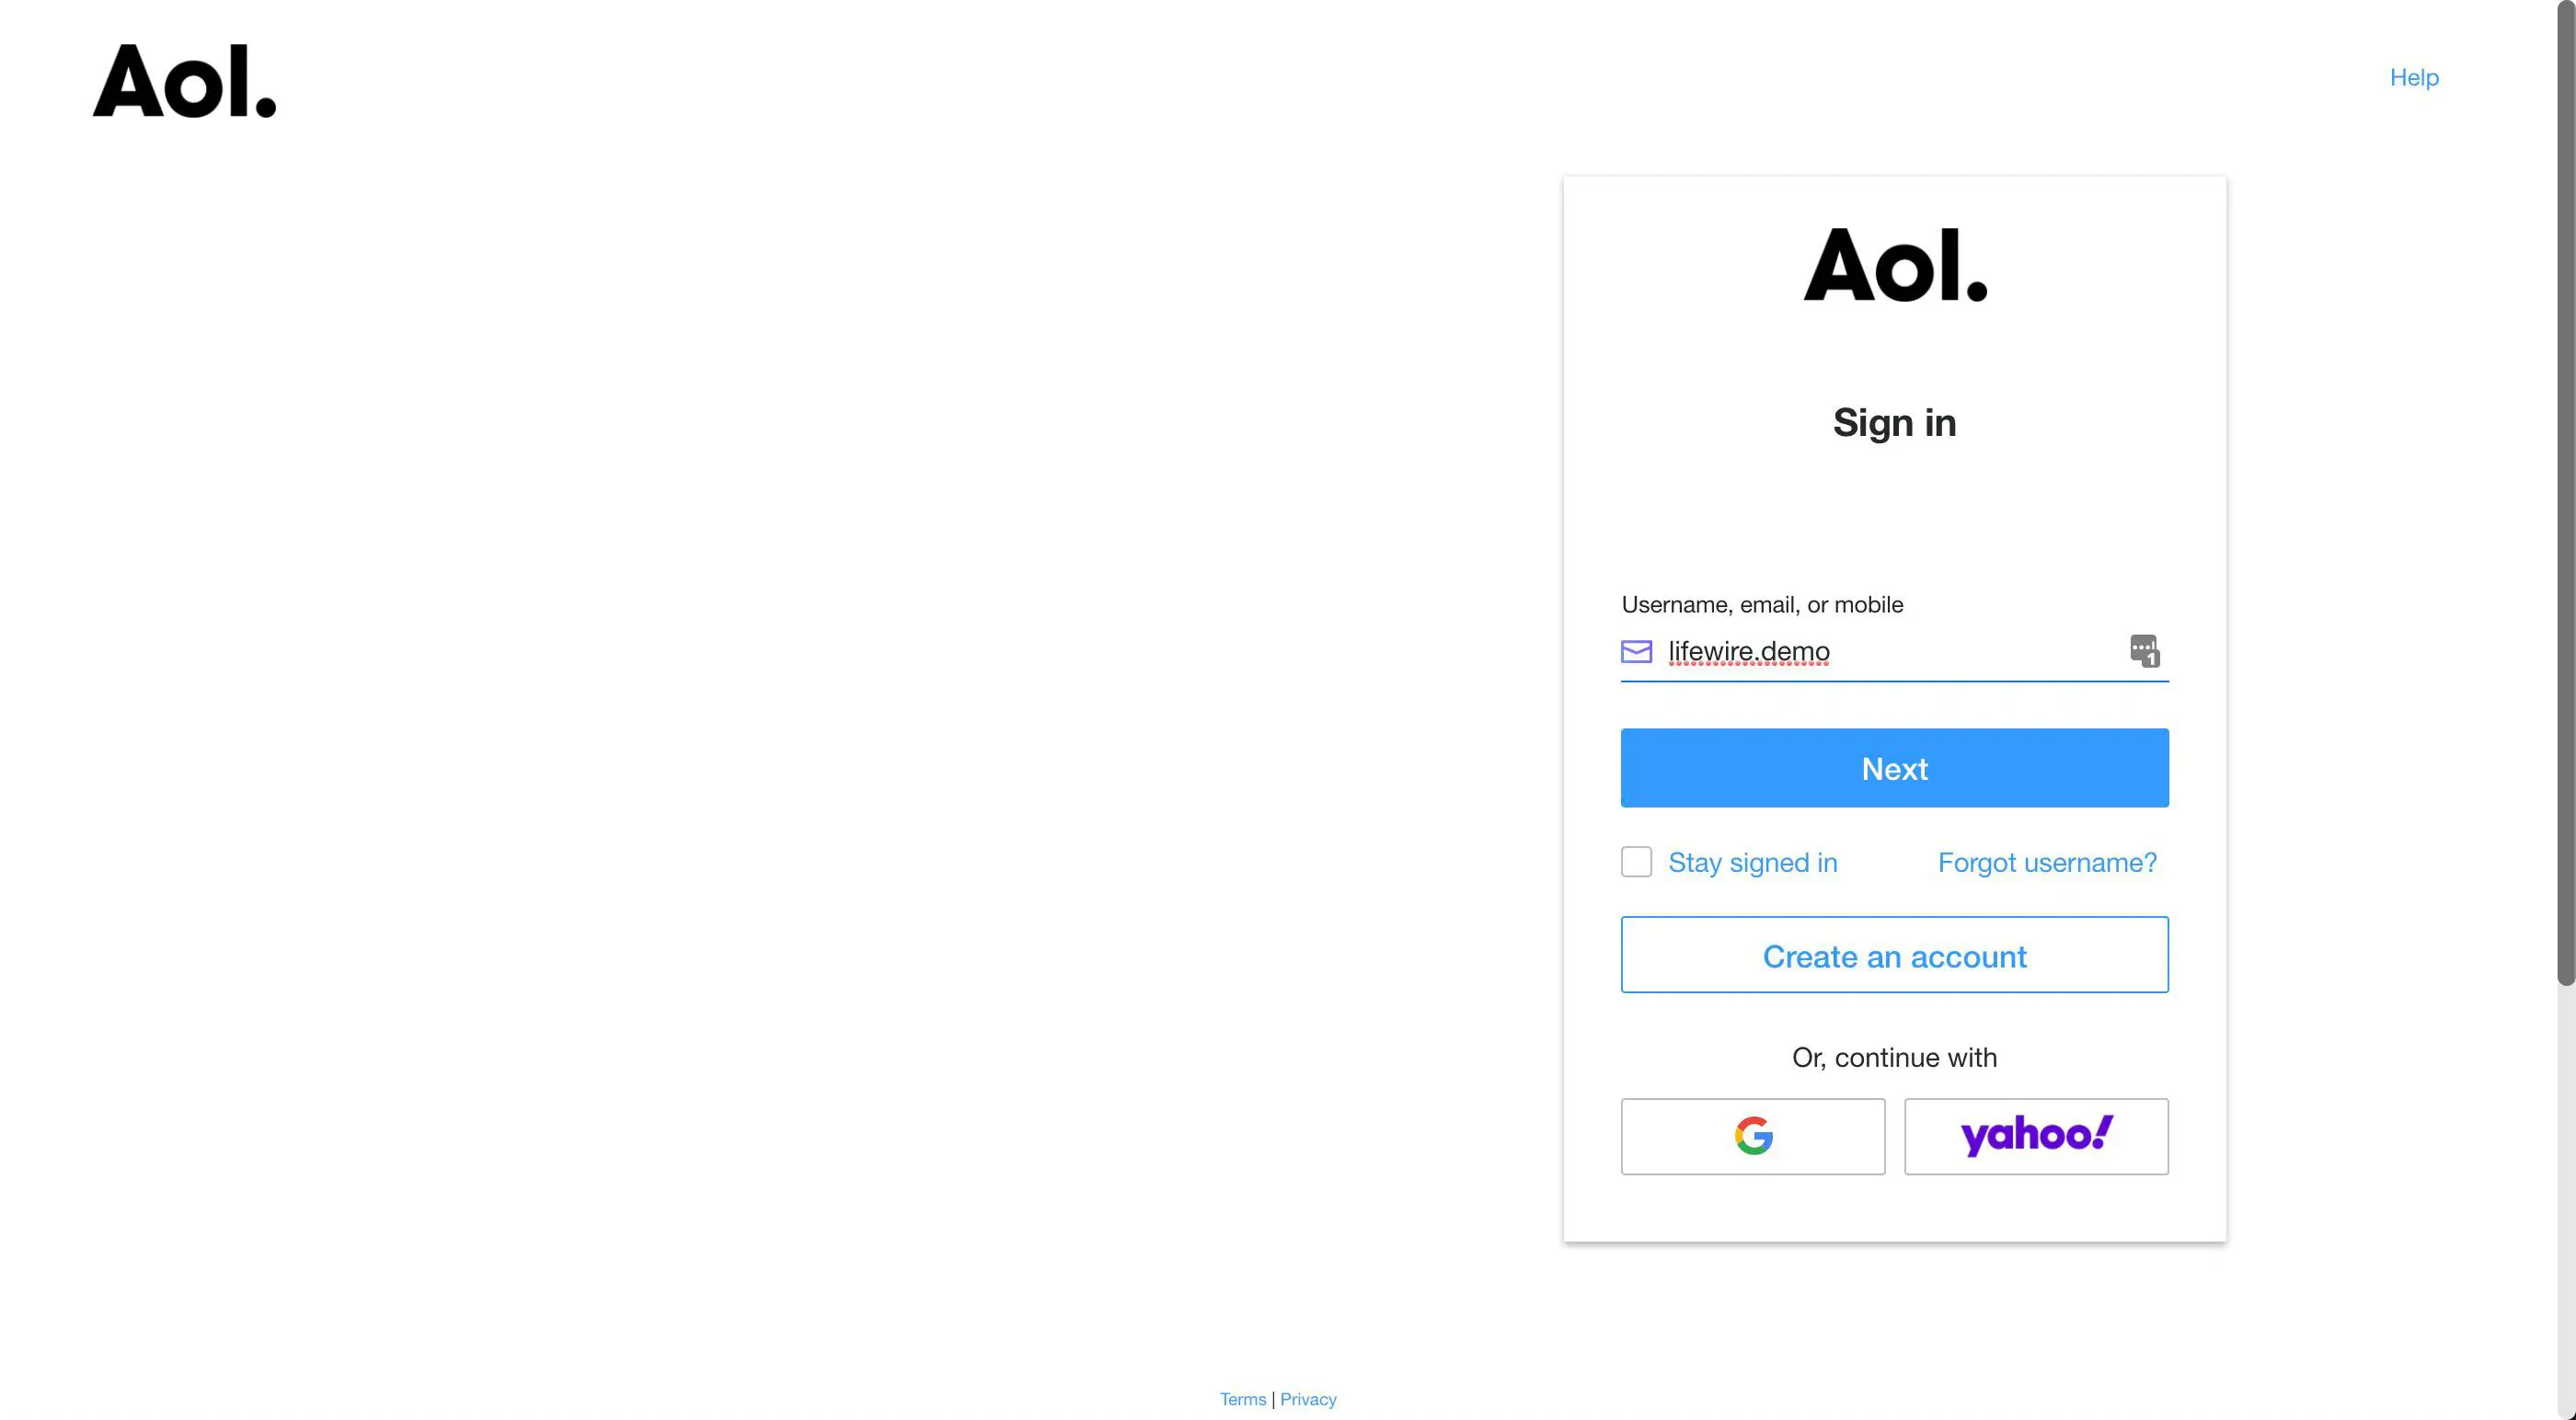 A tela de login da AOL